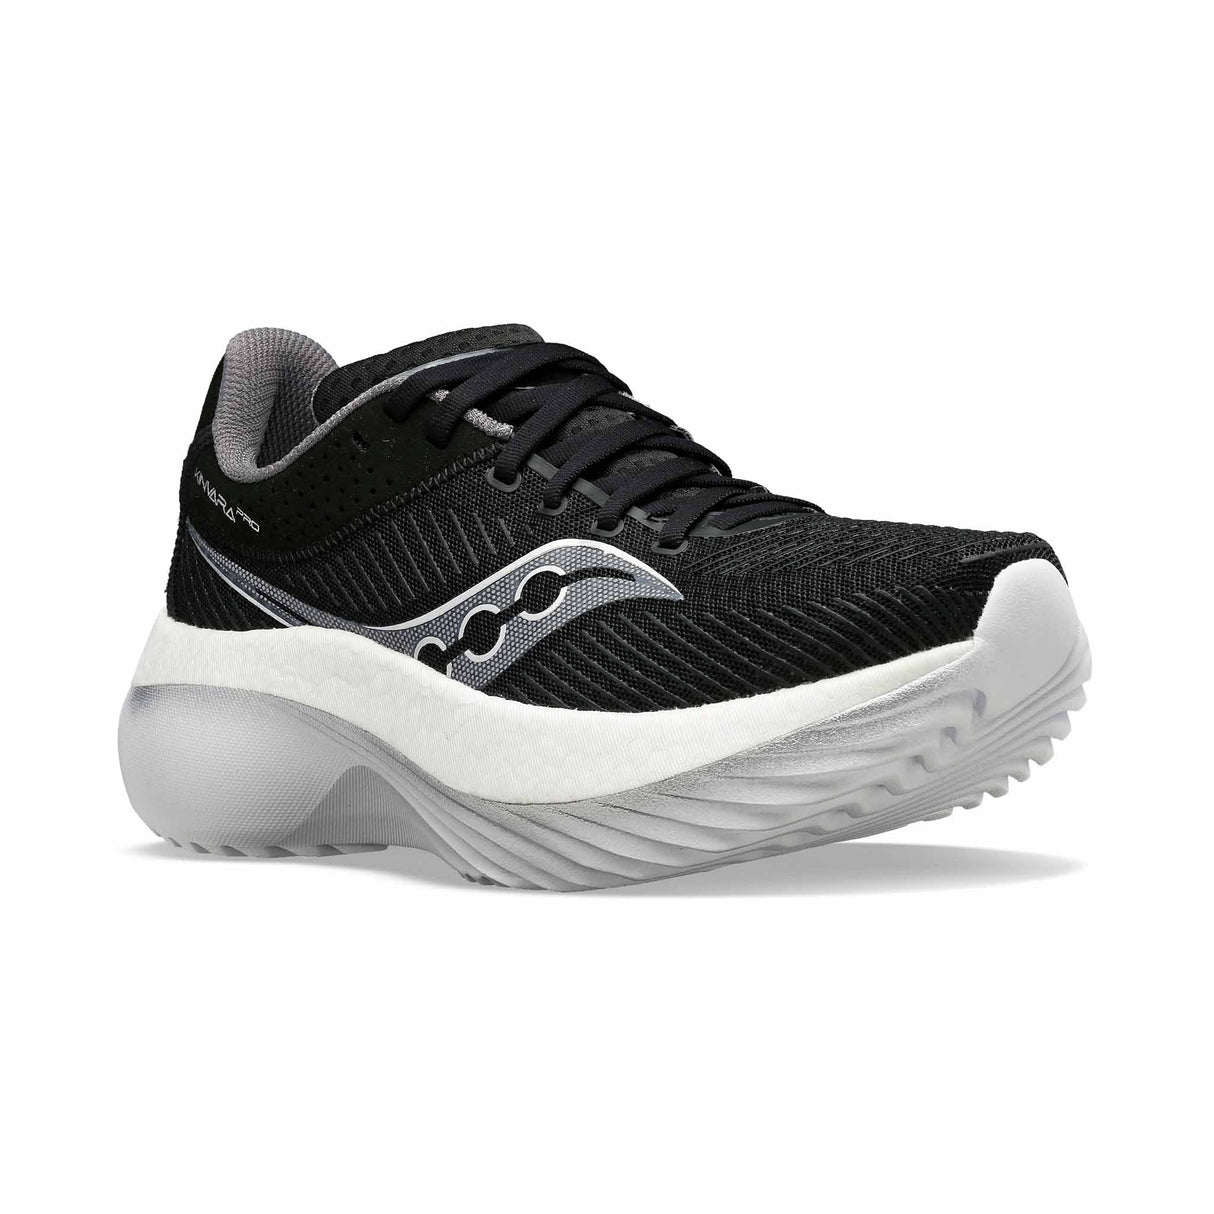 Saucony Kinvara Pro chaussures de course à pied femme - Black / White